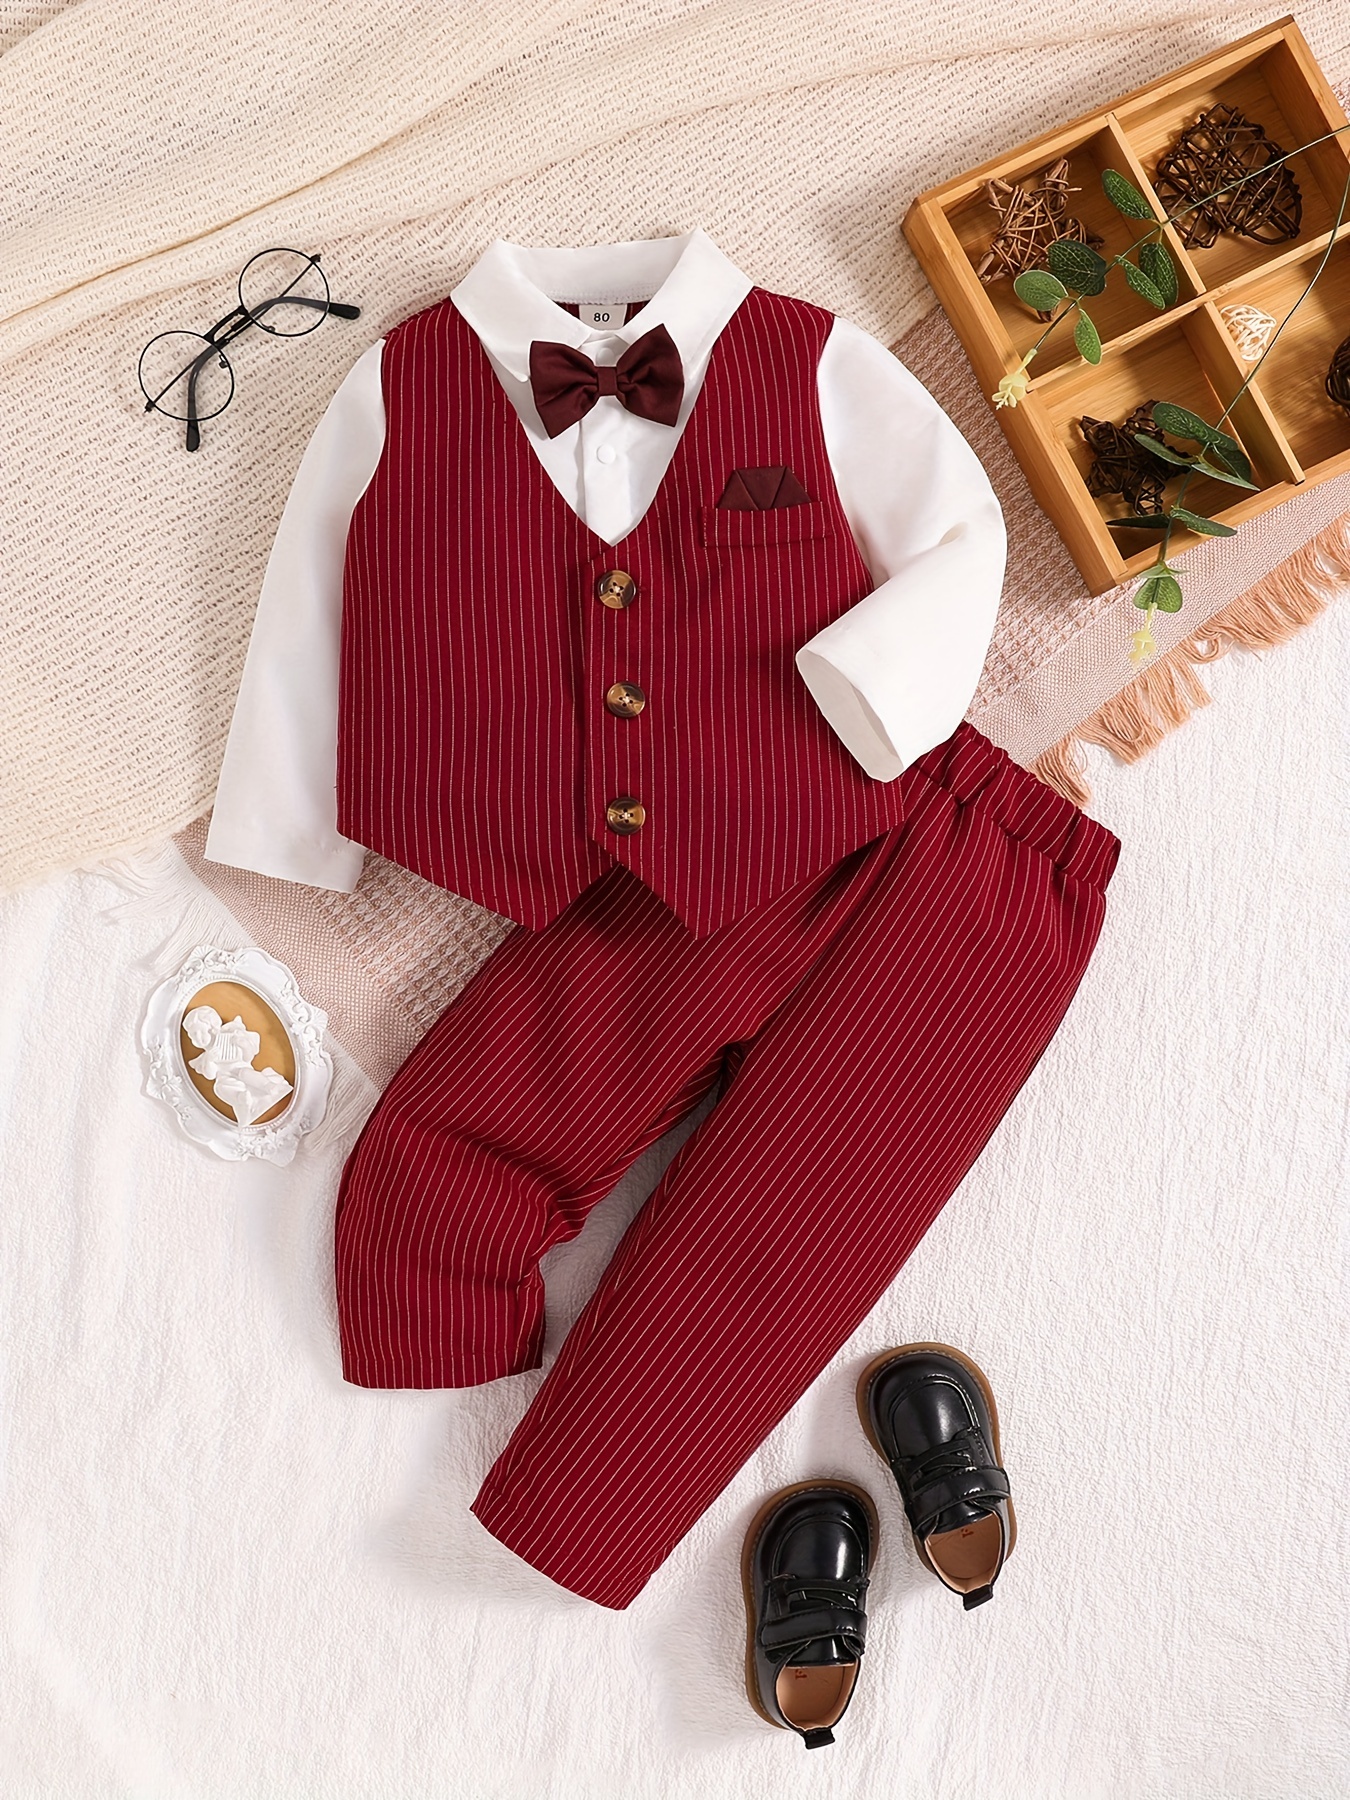 Ropa para niños pequeños, ropa de bebé niño con estampado de bebé, mameluco  y pantalones con tirantes, conjunto de caballero (rojo, 0-3 meses)